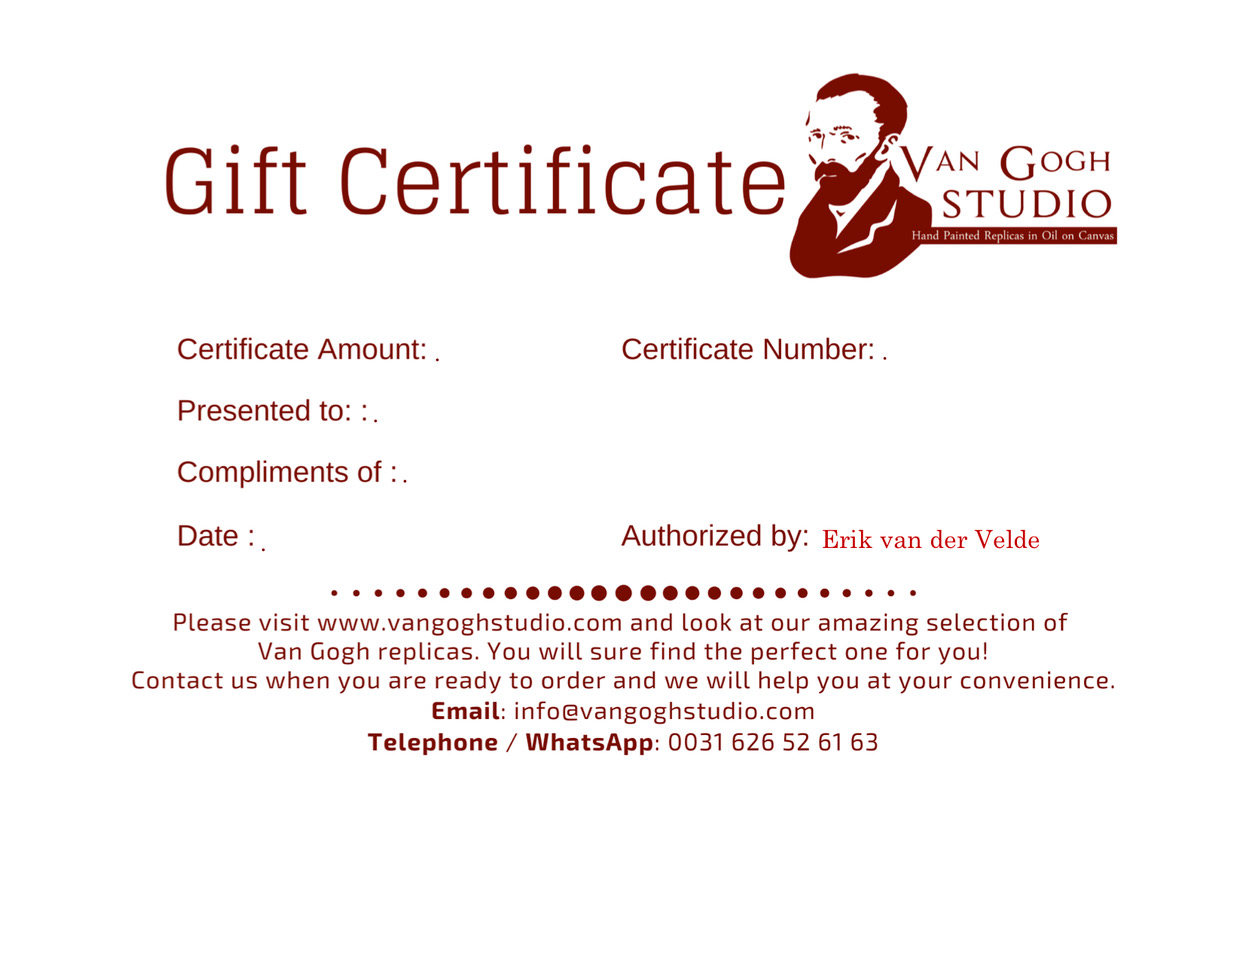 Van Gogh Studio Gift Certificate